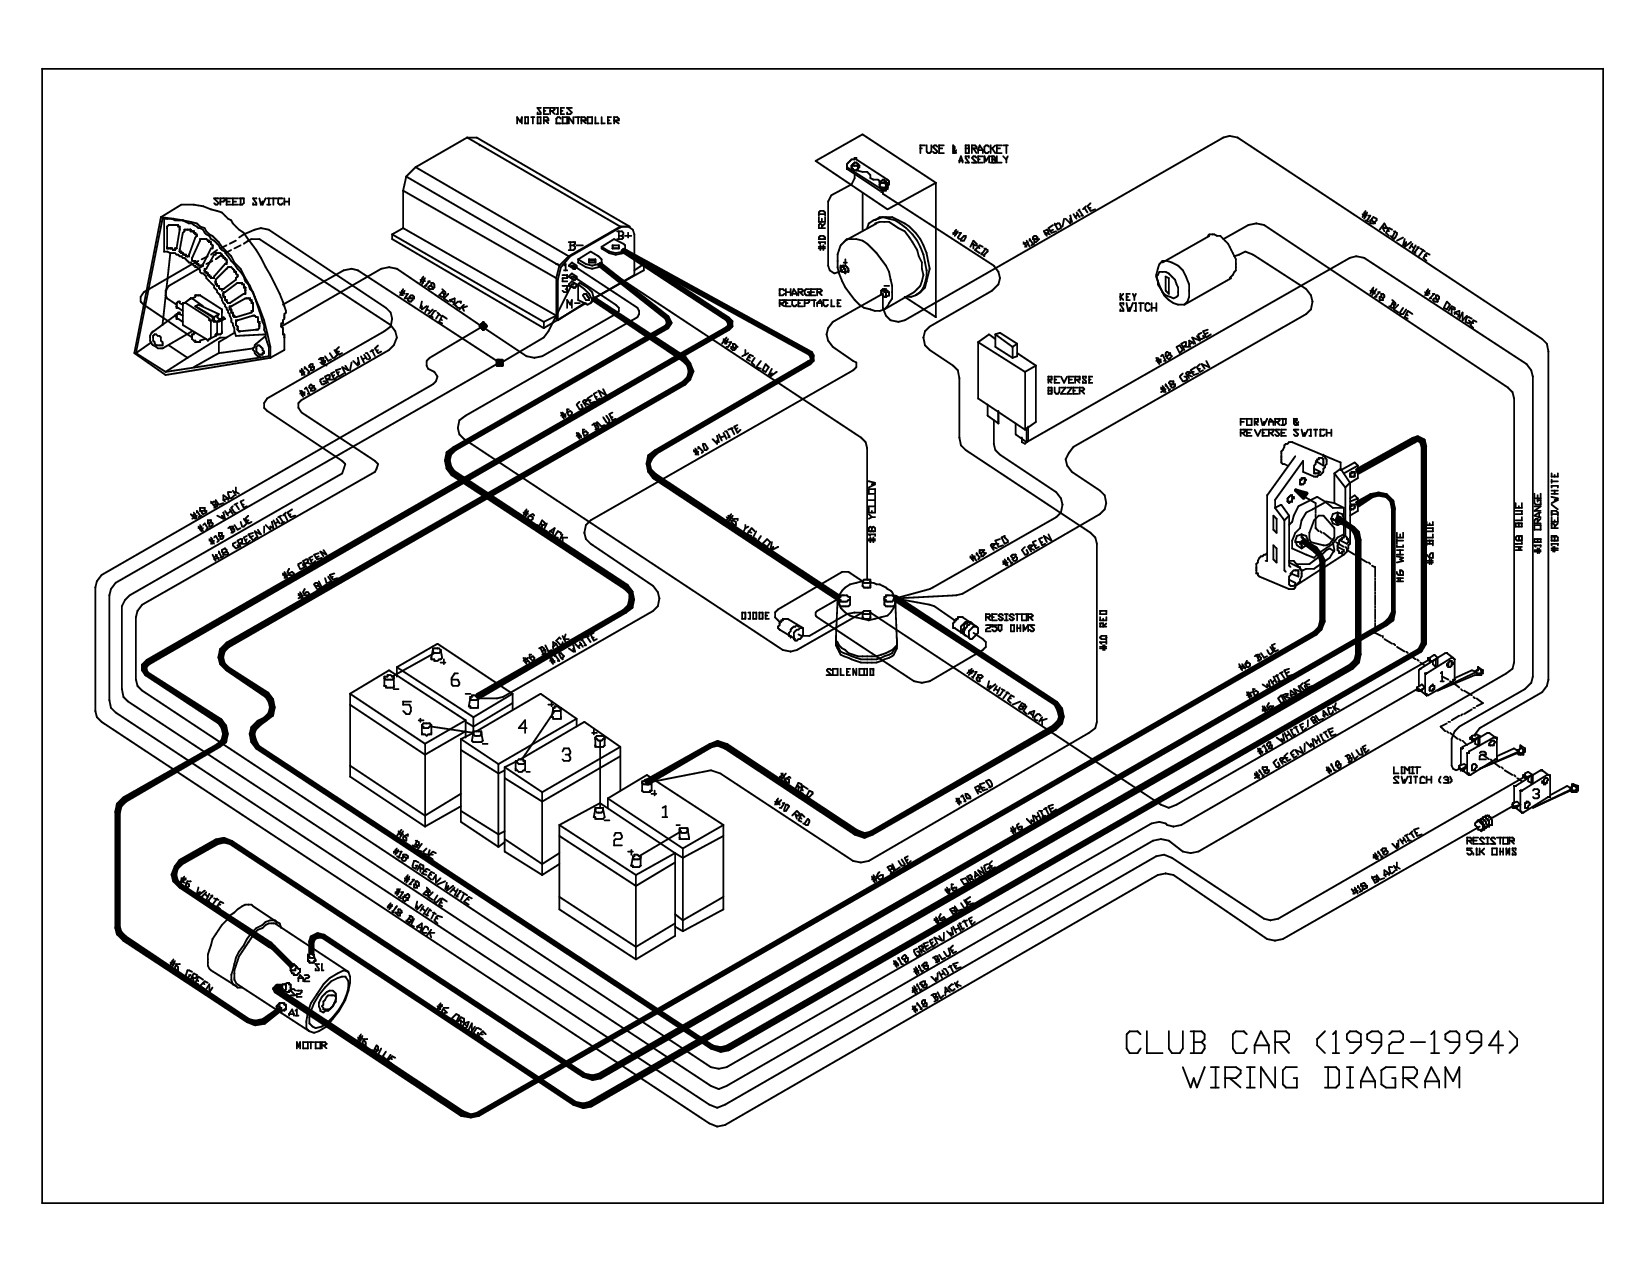 Club Car Wiring Diagram 48 Volt 1995 Club Car 48 Volt Wiring Diagram